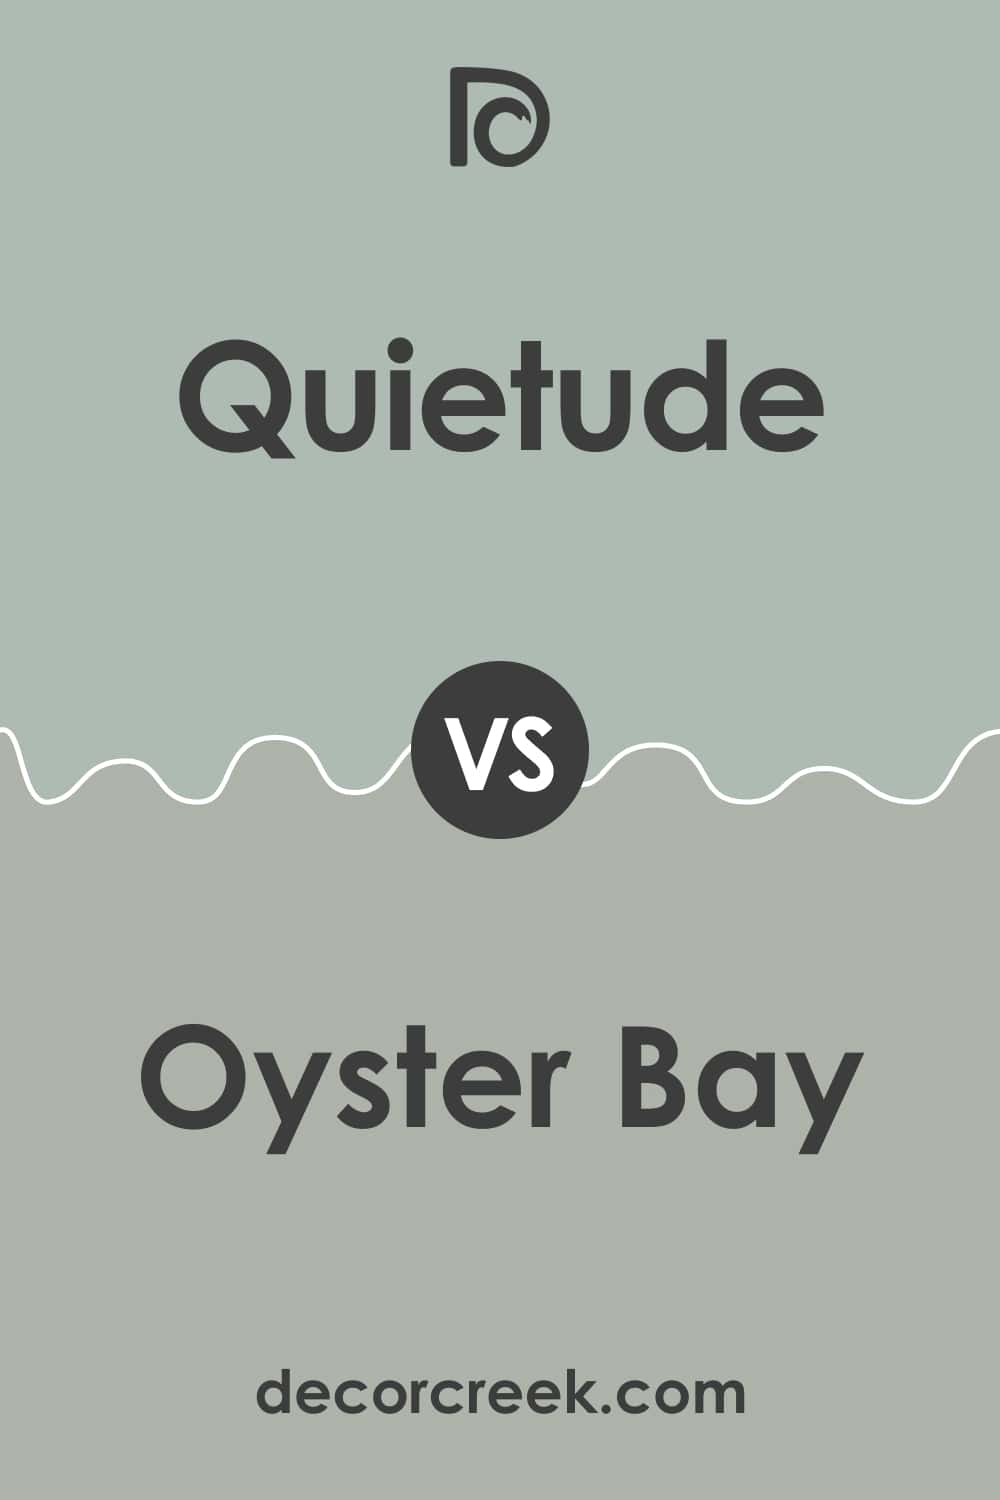 Quietude vs Oyster Bay